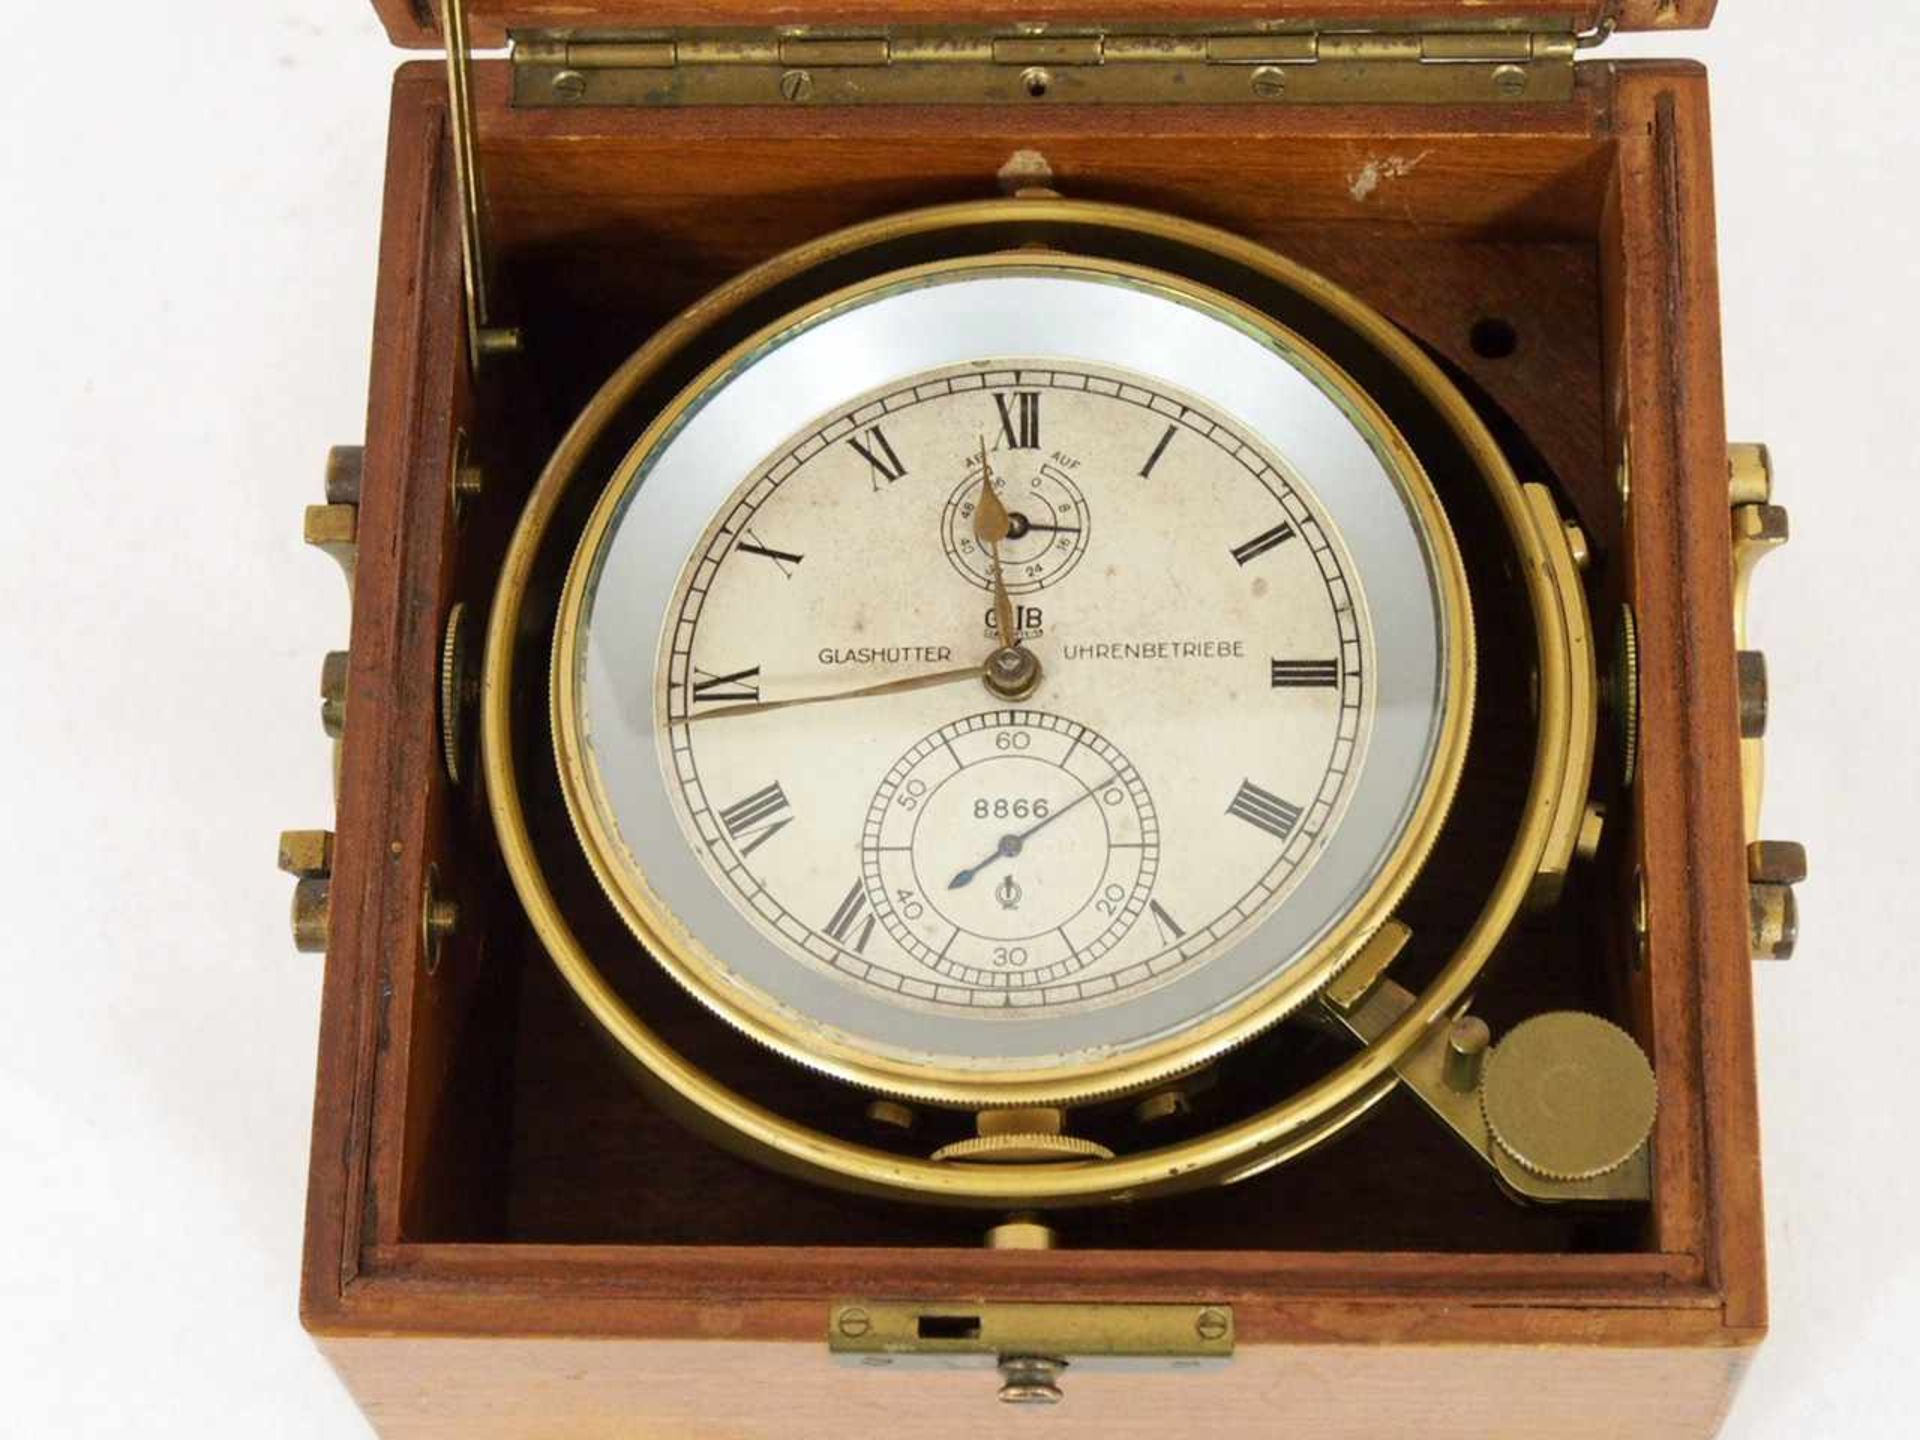 Glashütte - Schiffschronometer Nr. 8866< - Bild 2 aus 3